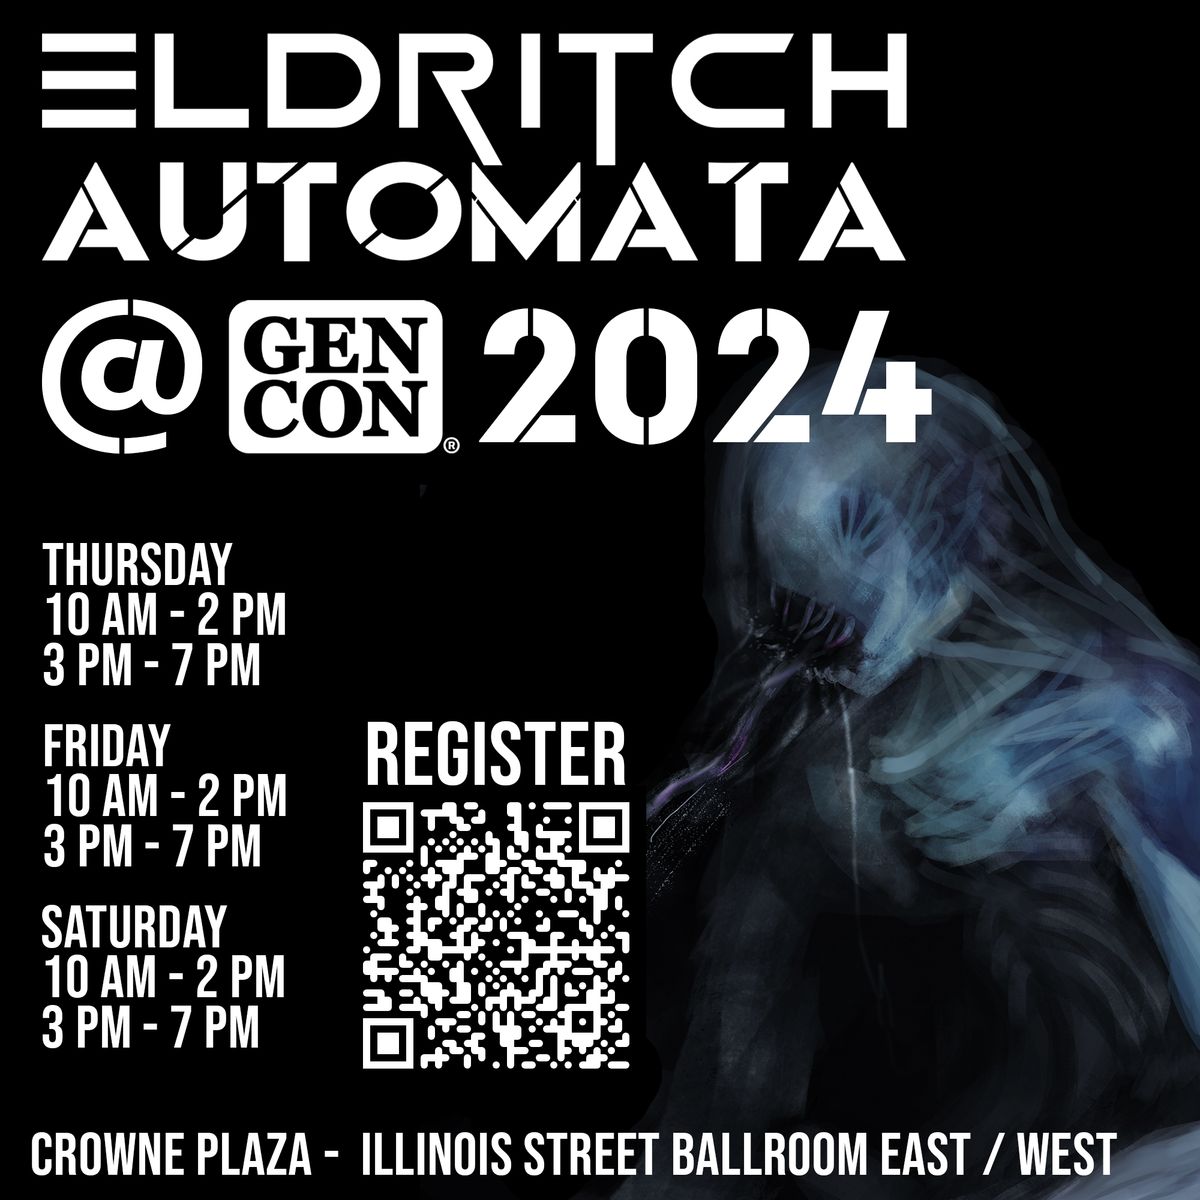 Eldritch Automata @ Gen Con 2024